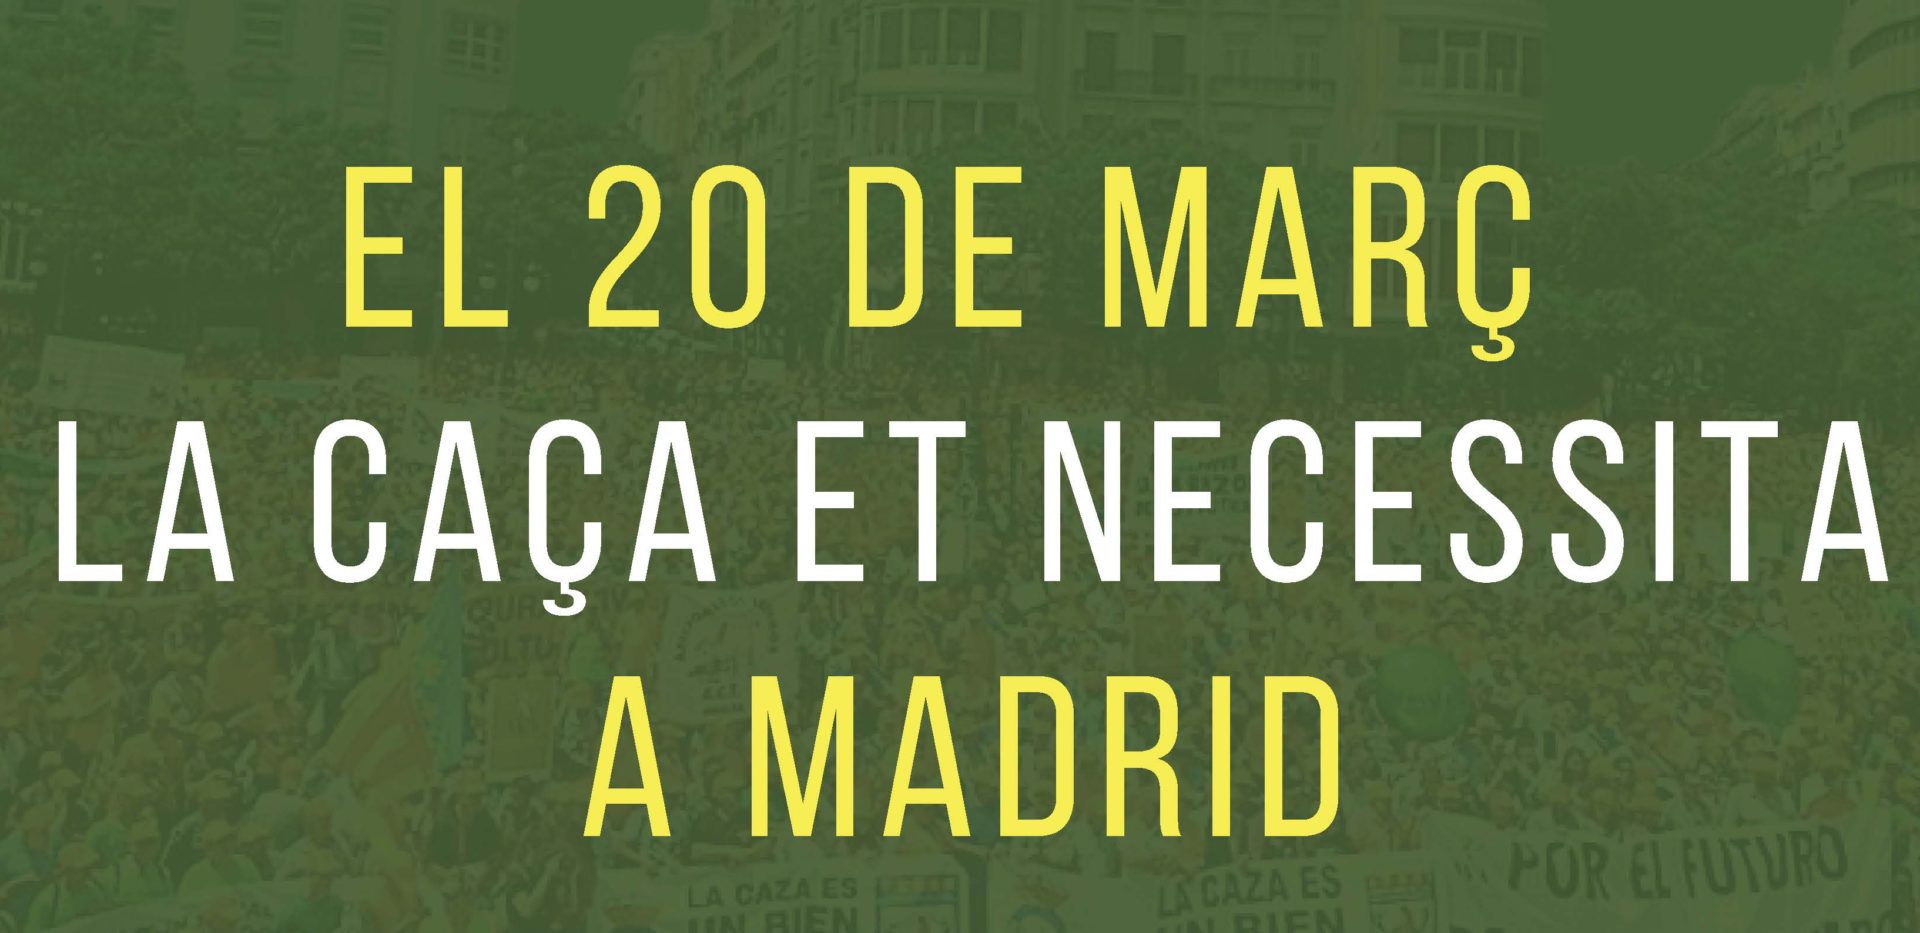 El 20 de març tots i totes a Madrid en defensa de la caça, l’agricultura,  la ramaderia, el món rural, la seva cultura i tradicions